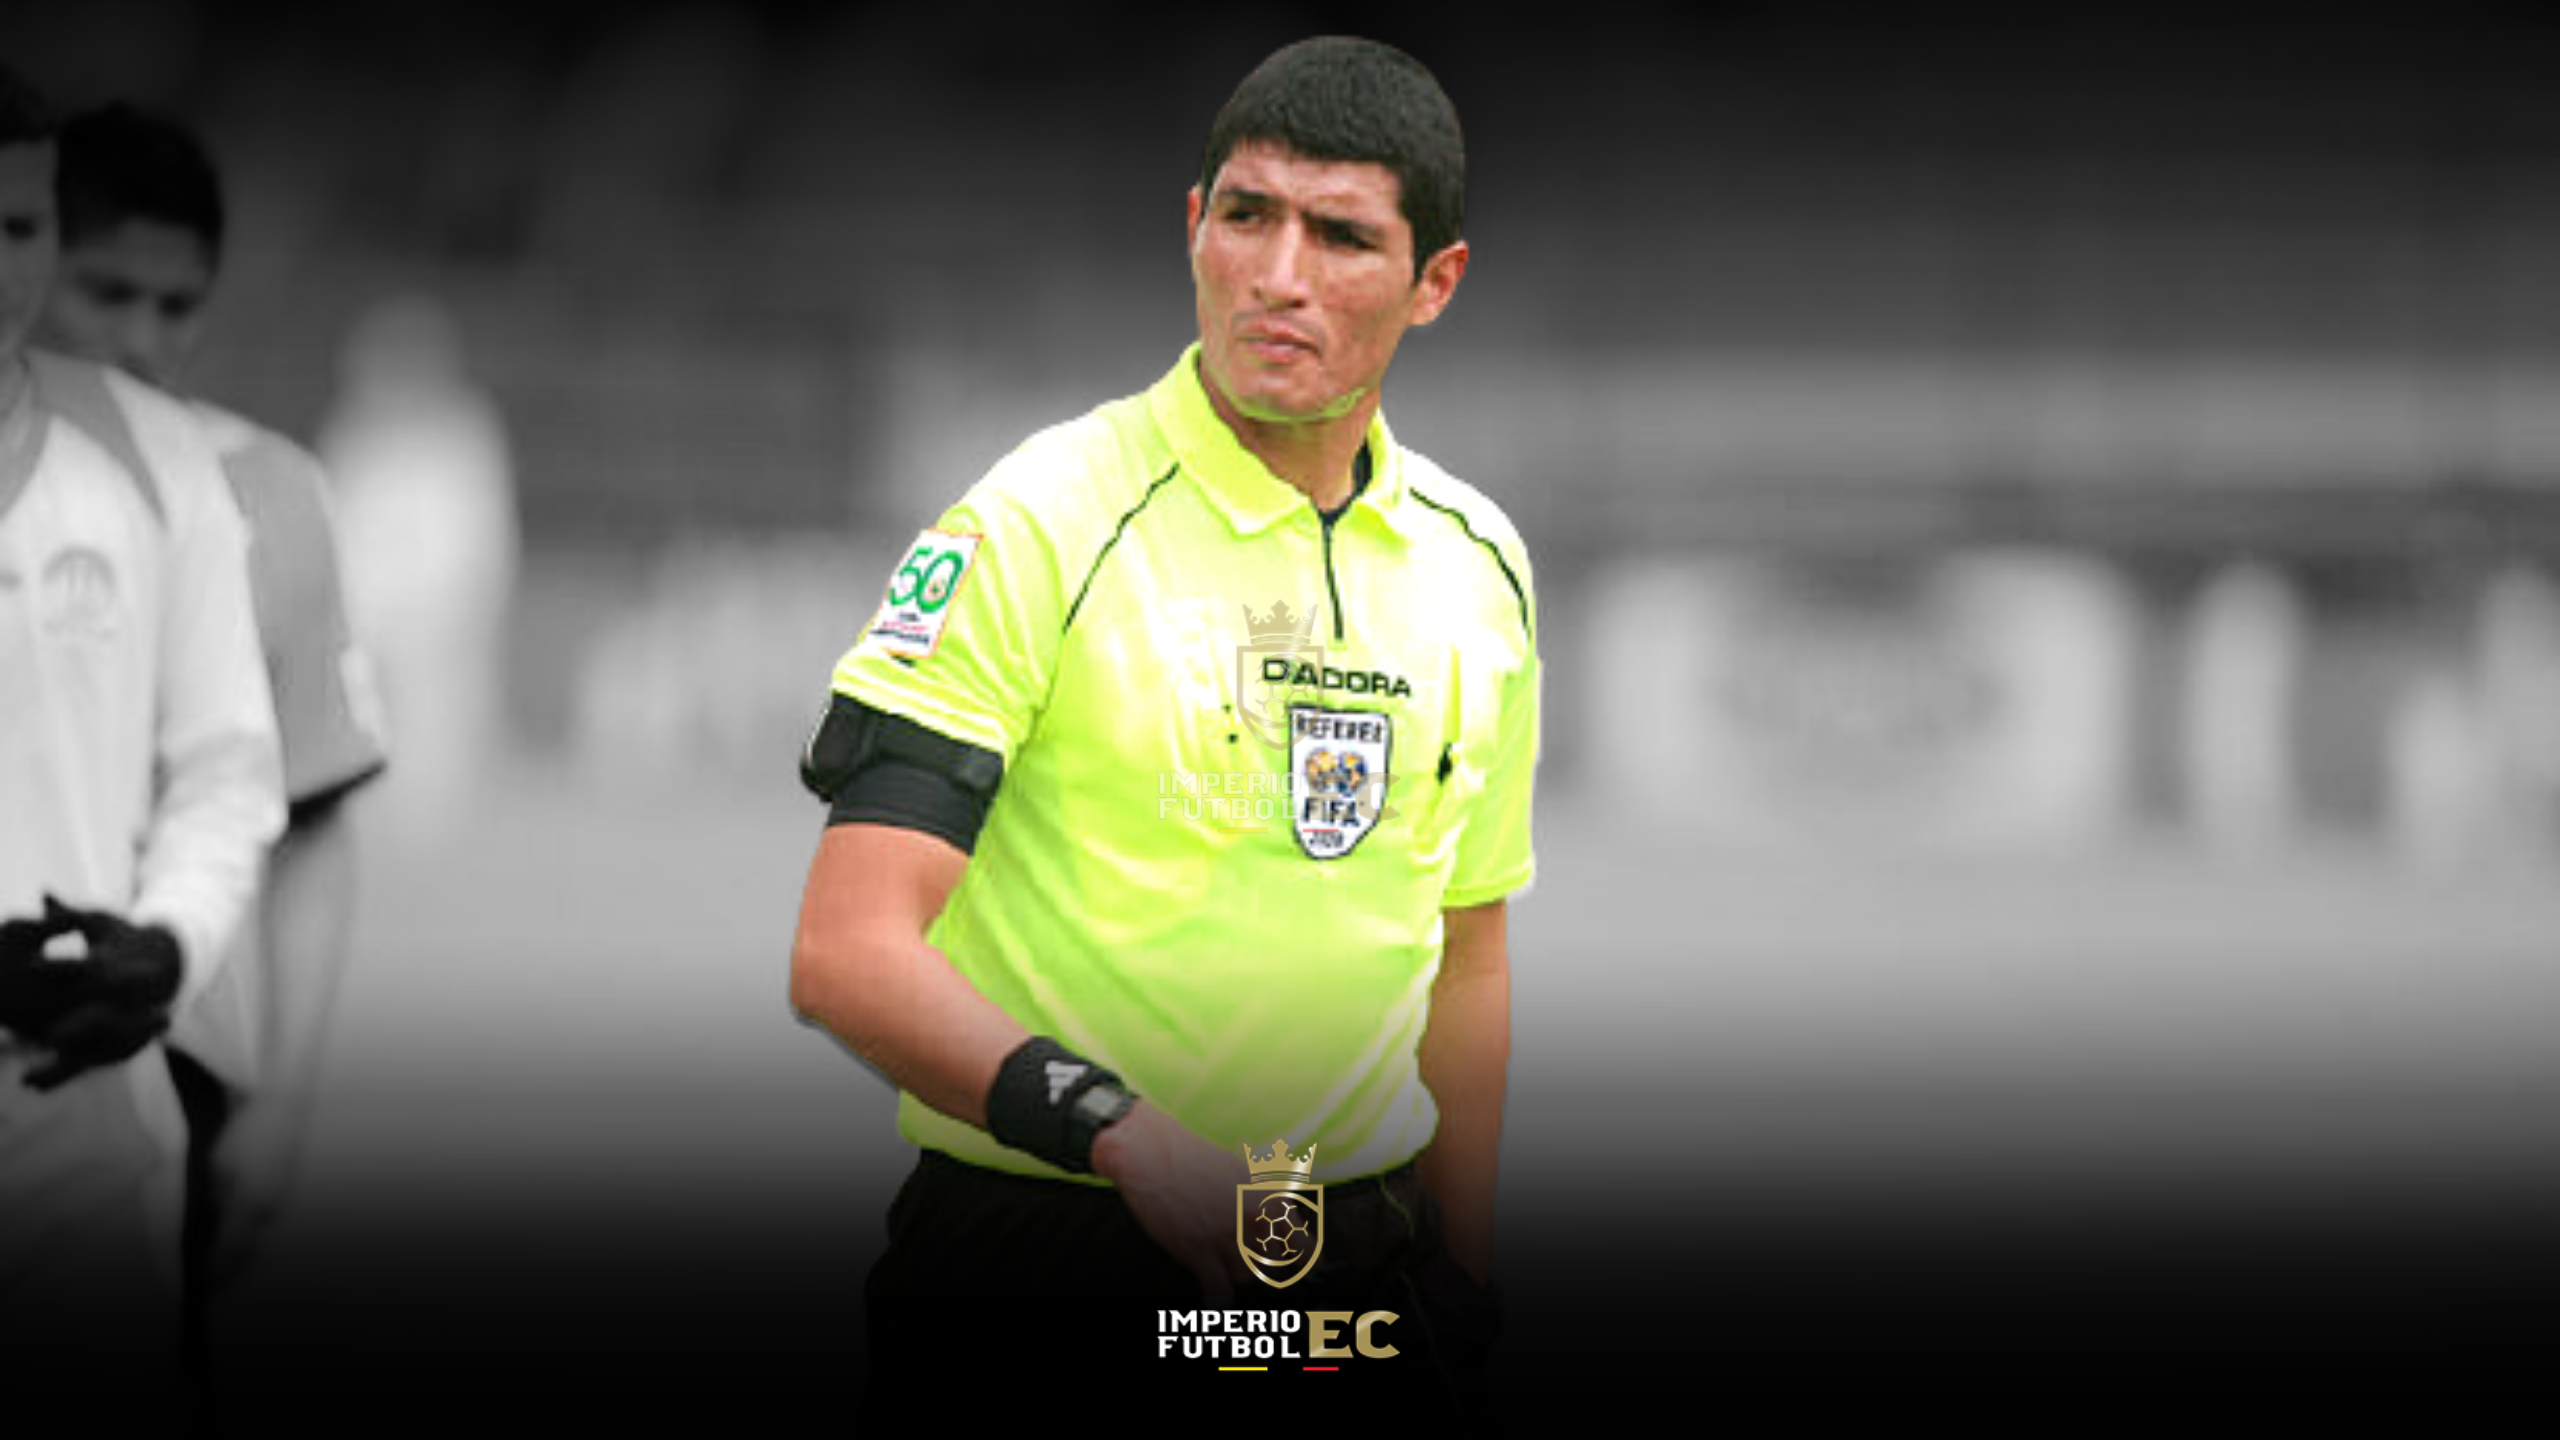 El árbitro Diego Lara recibió amenazas de muerte previo al duelo 9 de Octubre va Orense .